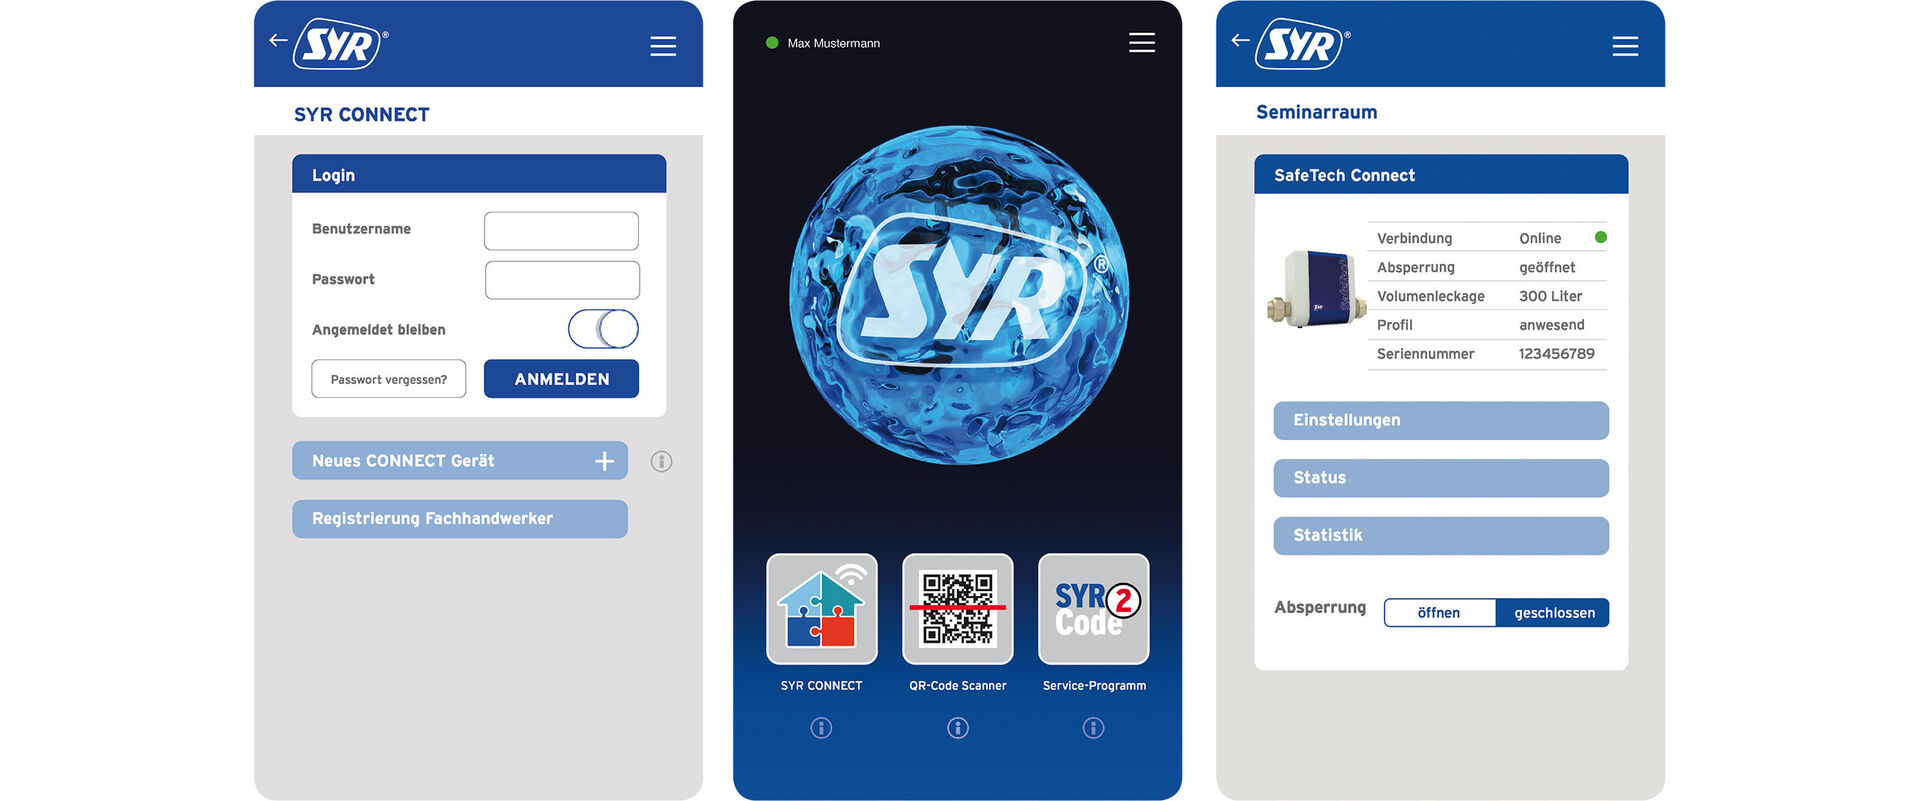 Drei Bildschirmfotos aus der SYR Connect App, der smarten Steuerung für die Hauswasseranlage.